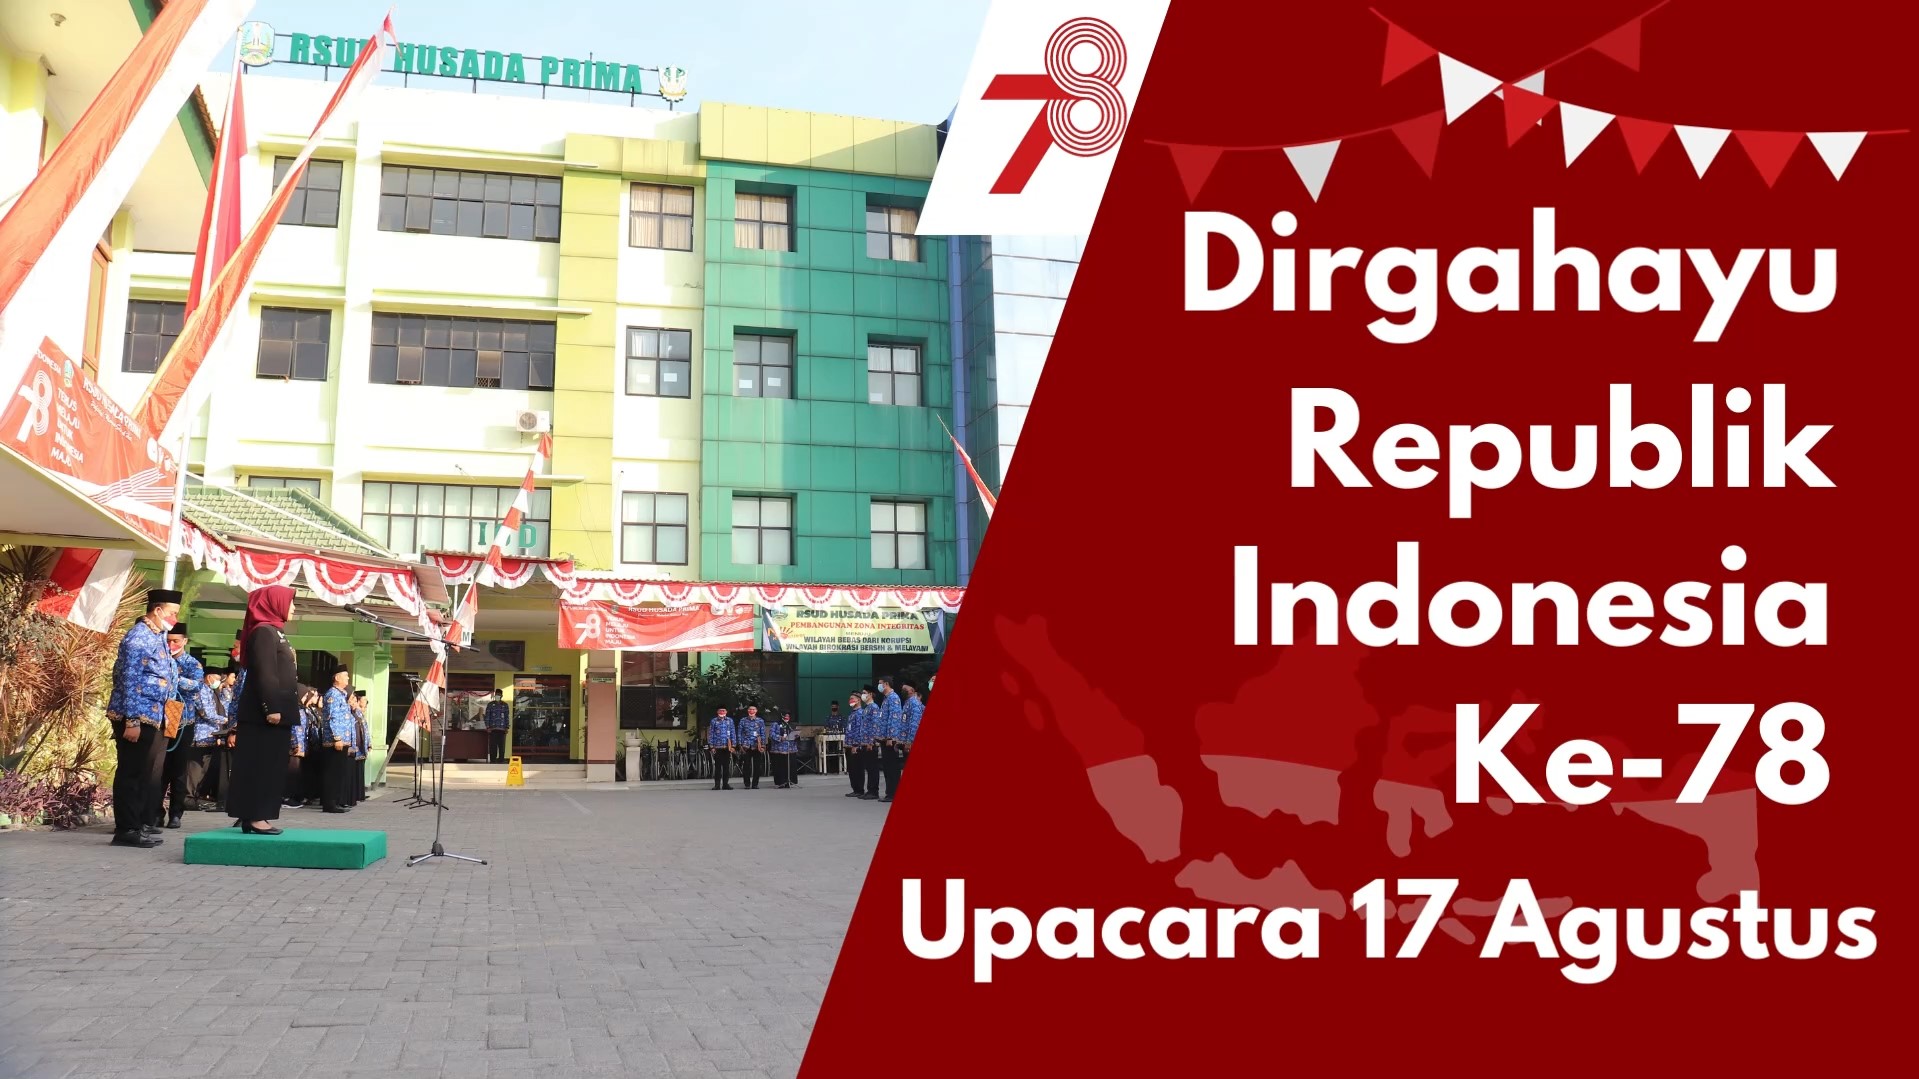 Foto kegiatan Upacara Bendera Dipimpin Oleh Direktur RSUD Husada Prima (drg. Dyah Retno A. Puspitorini, M.Si)